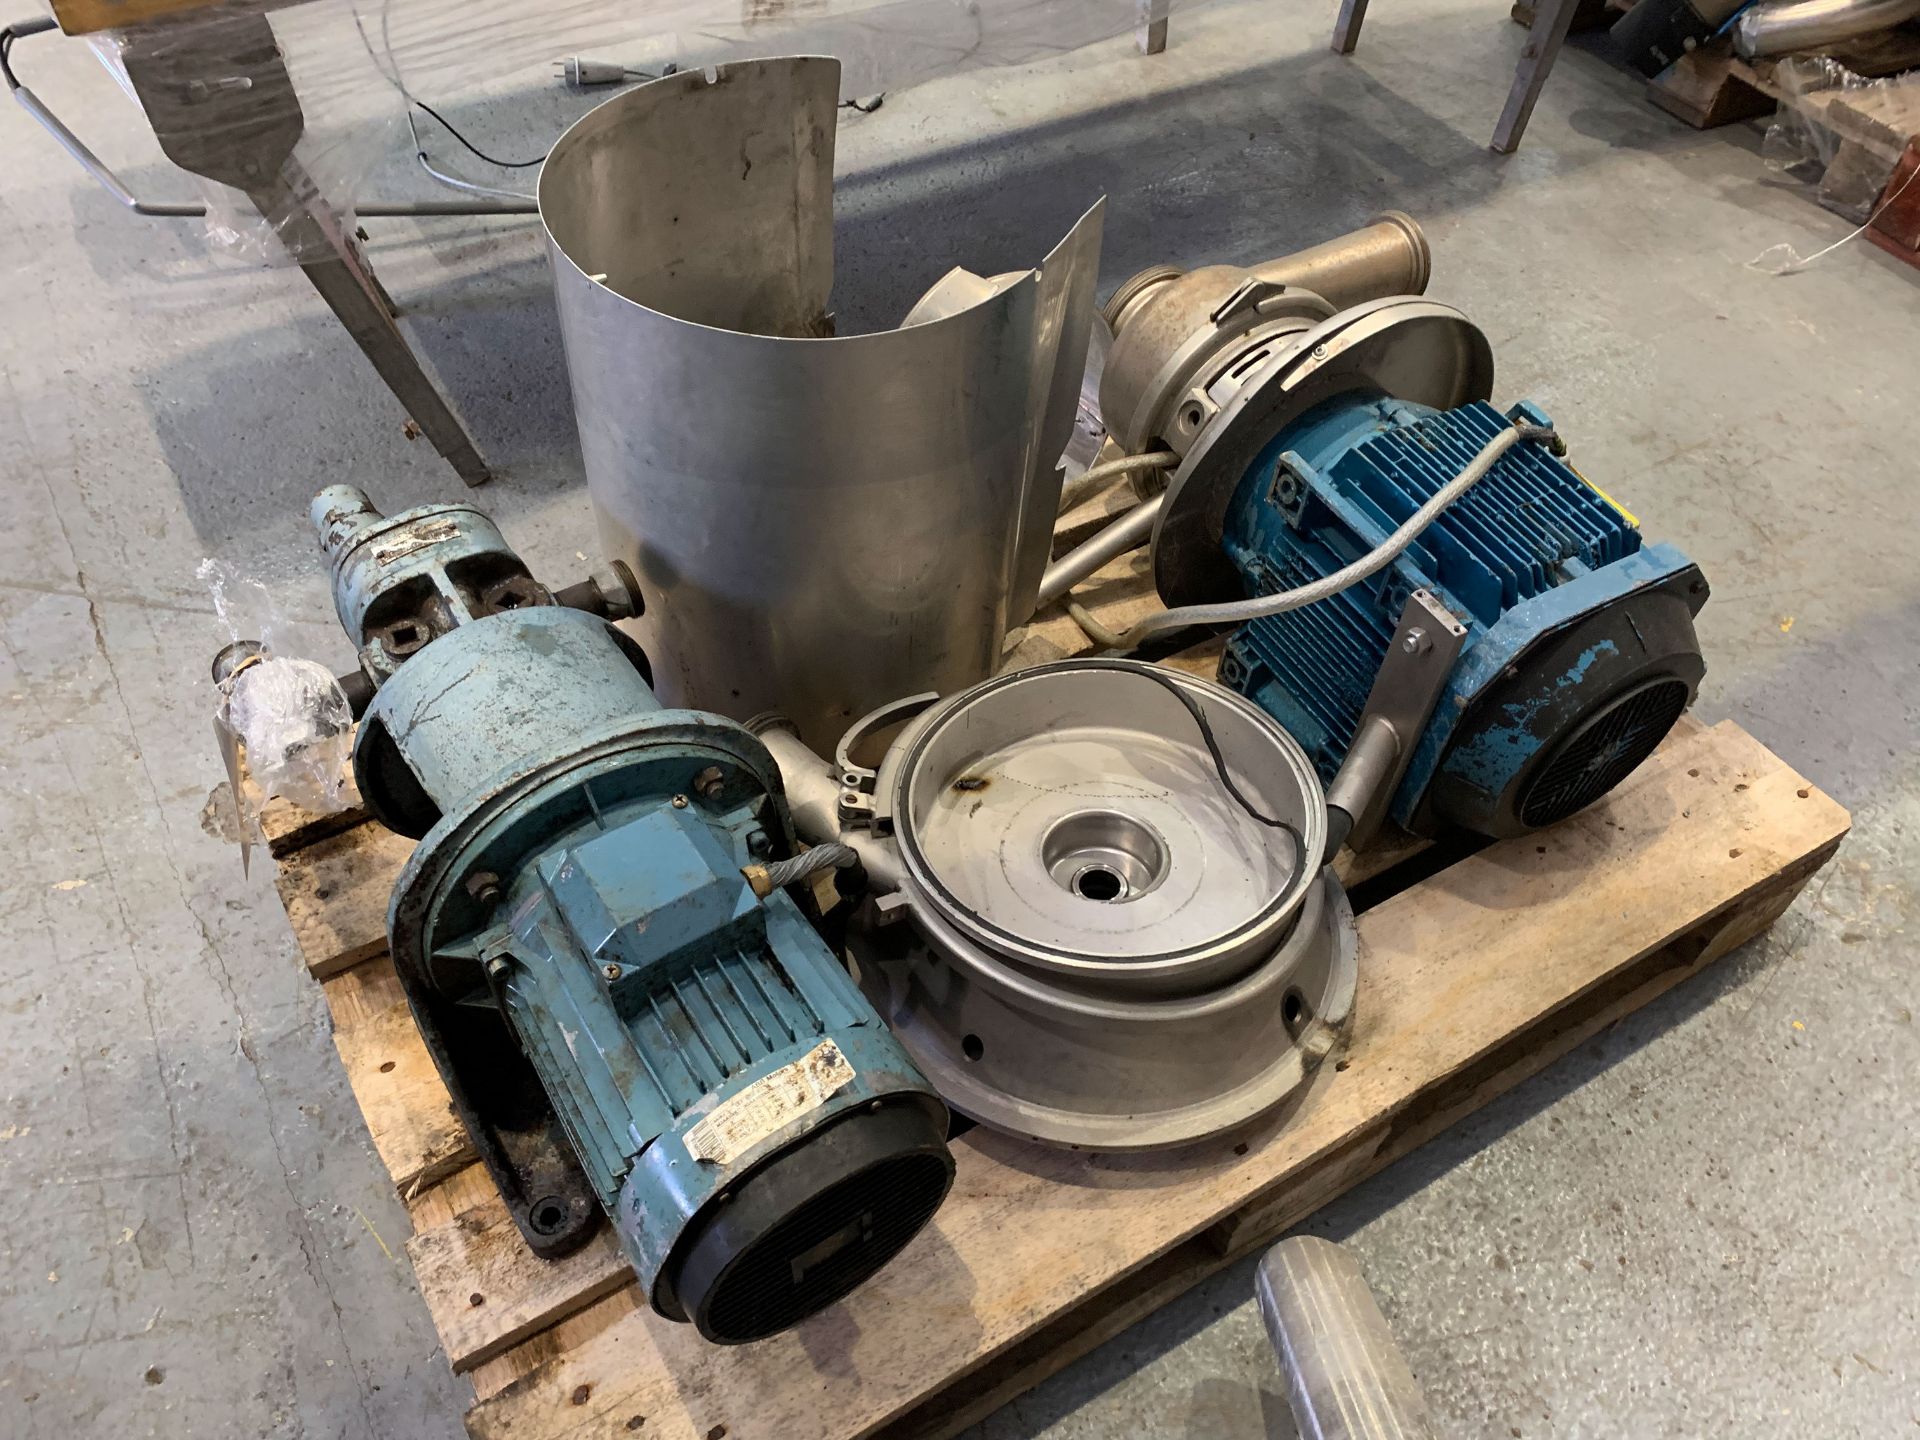 2x Motor Driven Pump Units and a Dismantled Pump